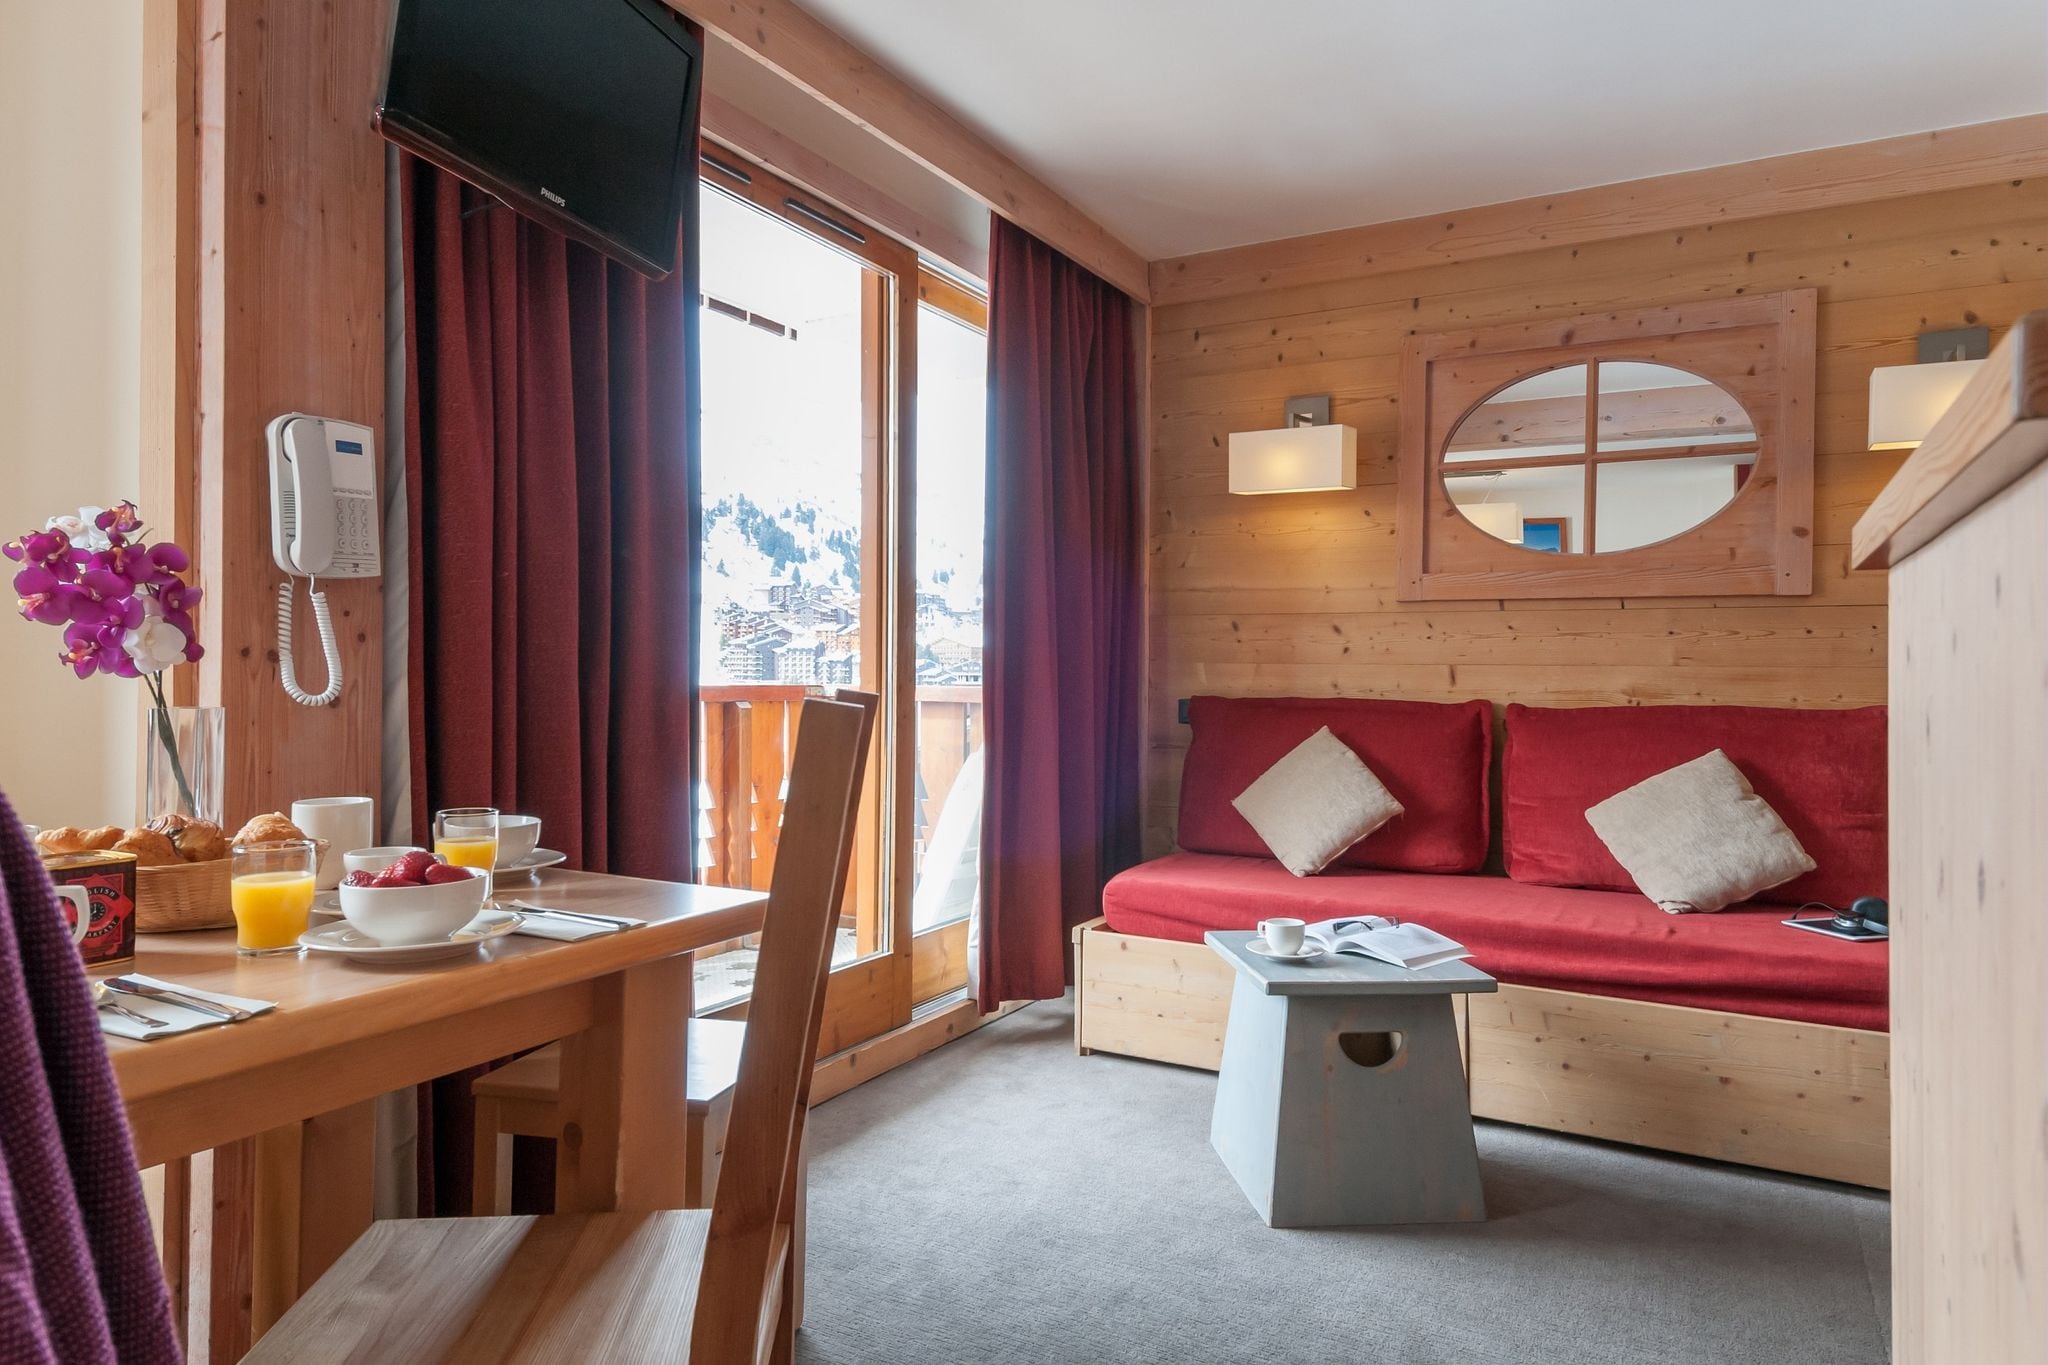 Appartements confortables dans une belle résidence, avec accès direct aux pistes de ski
